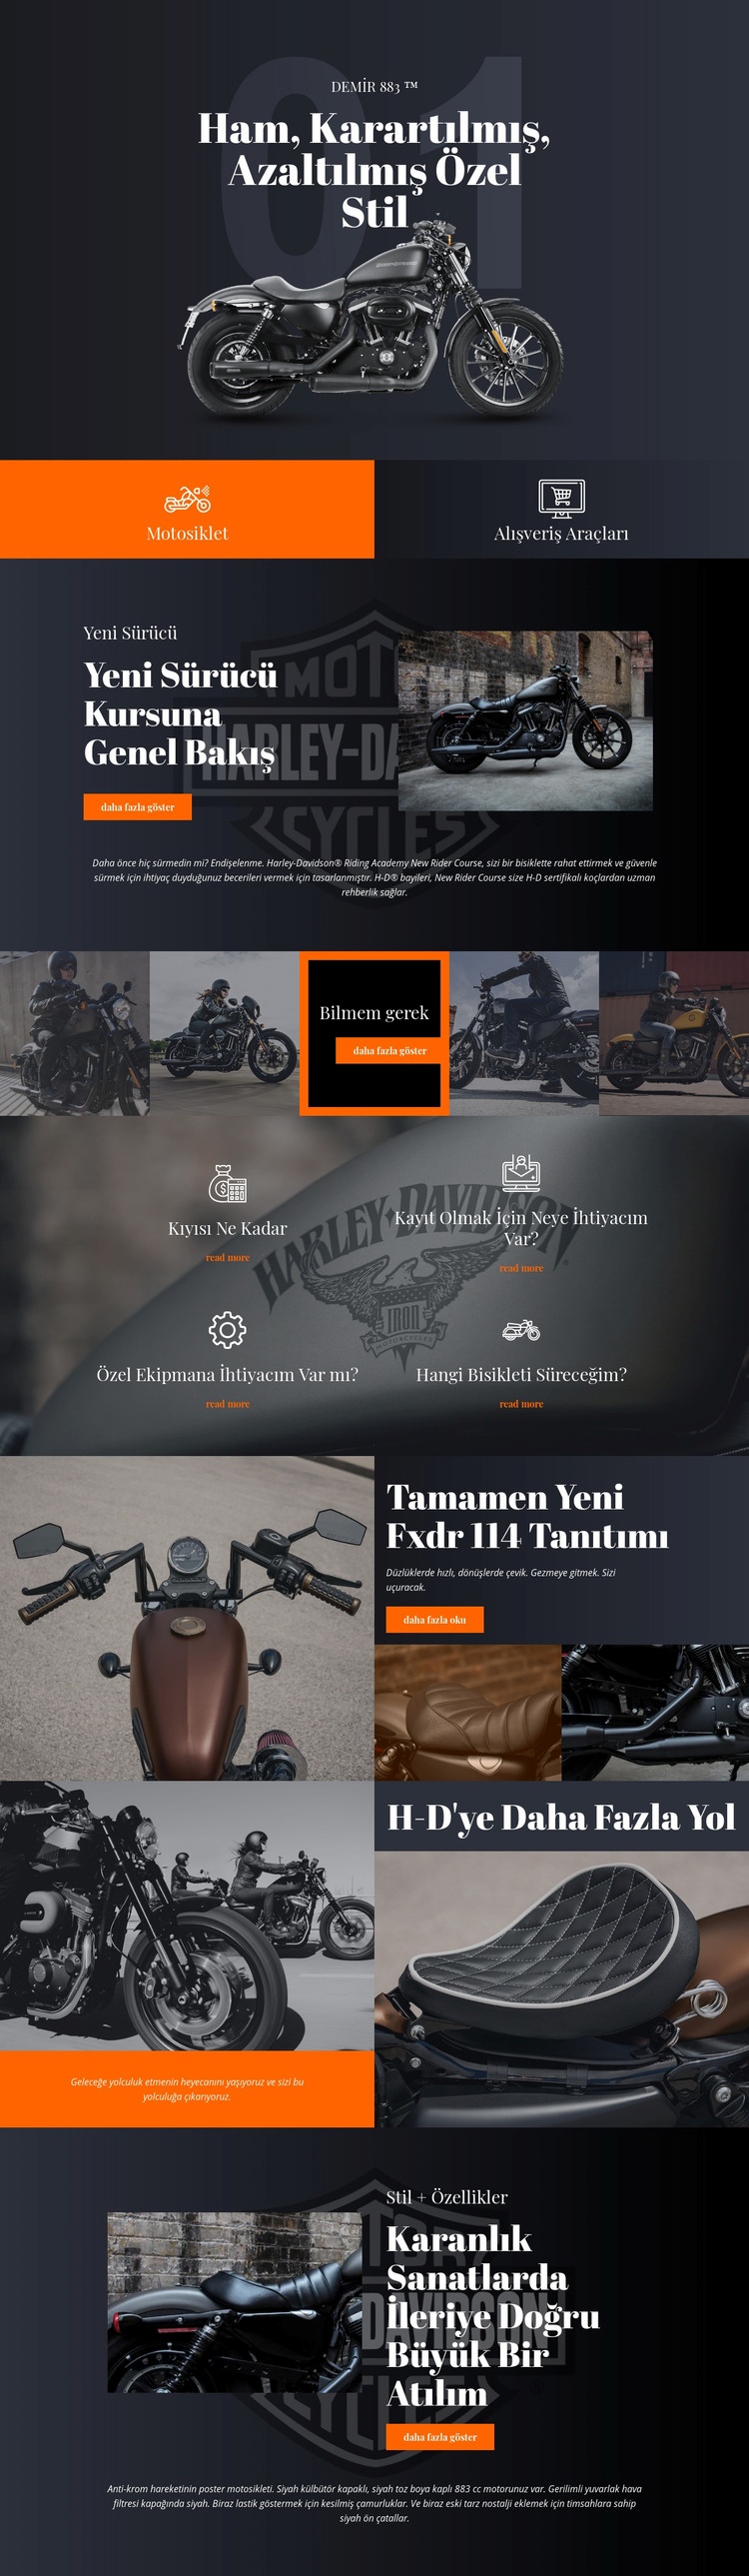 Harley Davidson Web sitesi tasarımı